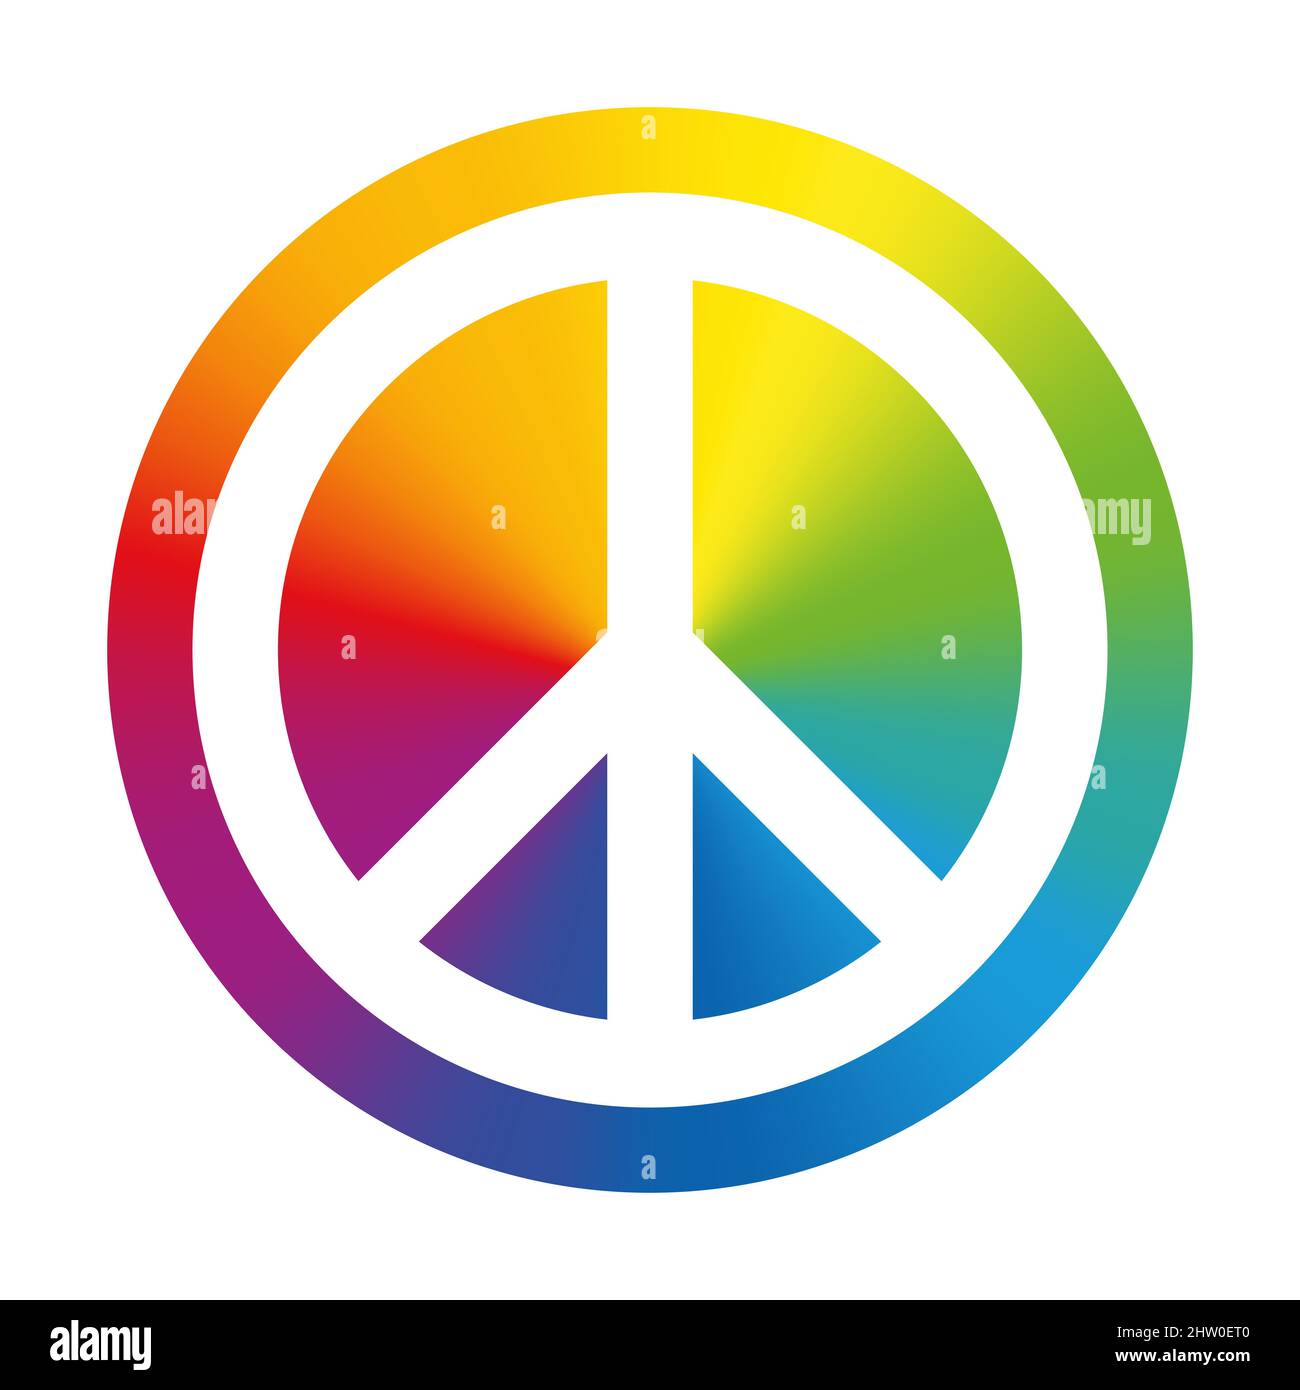 Symbole de paix blanc, sur un cercle de couleur arc-en-ciel. Initialement conçu pour le mouvement de désarmement nucléaire, aujourd'hui largement connu sous le nom de signe de paix. Banque D'Images